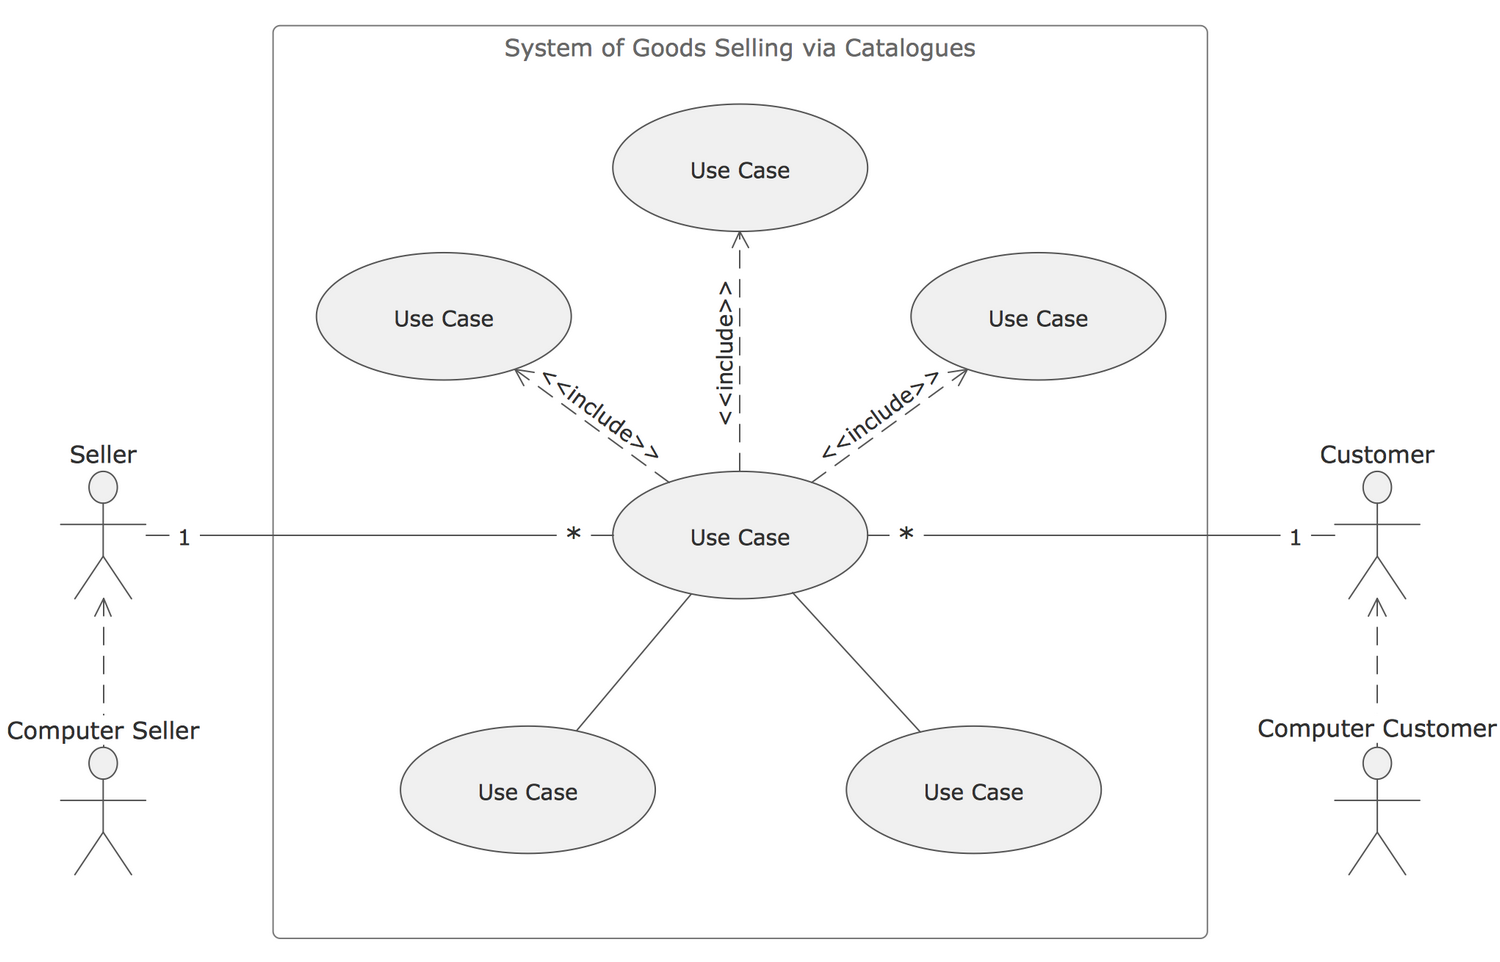 uml use case diagram online